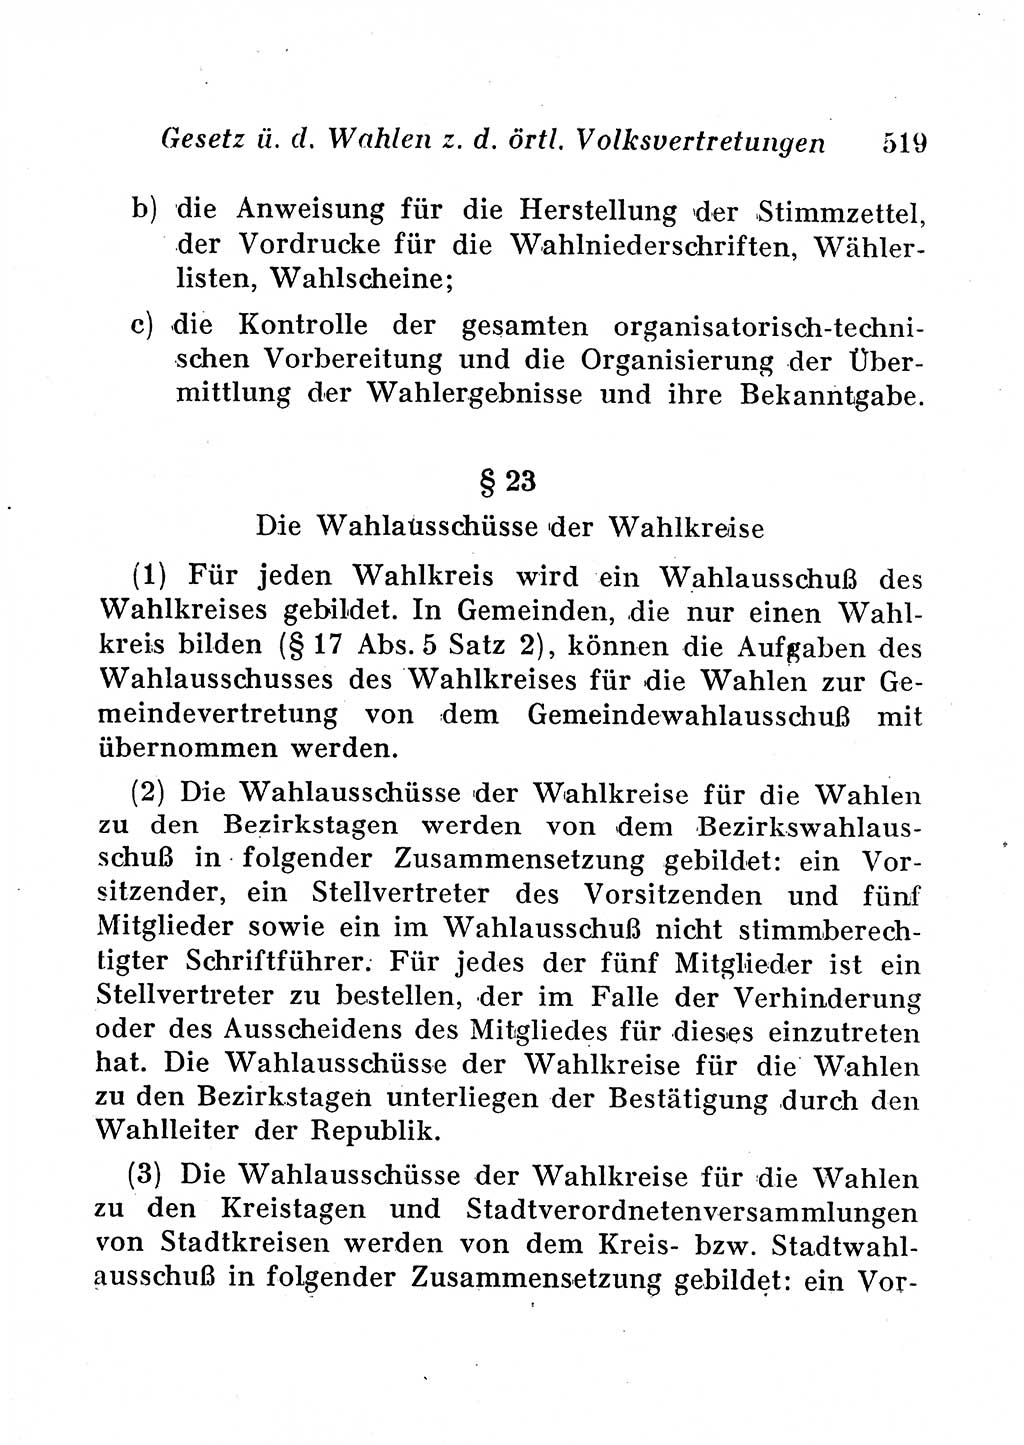 Staats- und verwaltungsrechtliche Gesetze der Deutschen Demokratischen Republik (DDR) 1958, Seite 519 (StVerwR Ges. DDR 1958, S. 519)